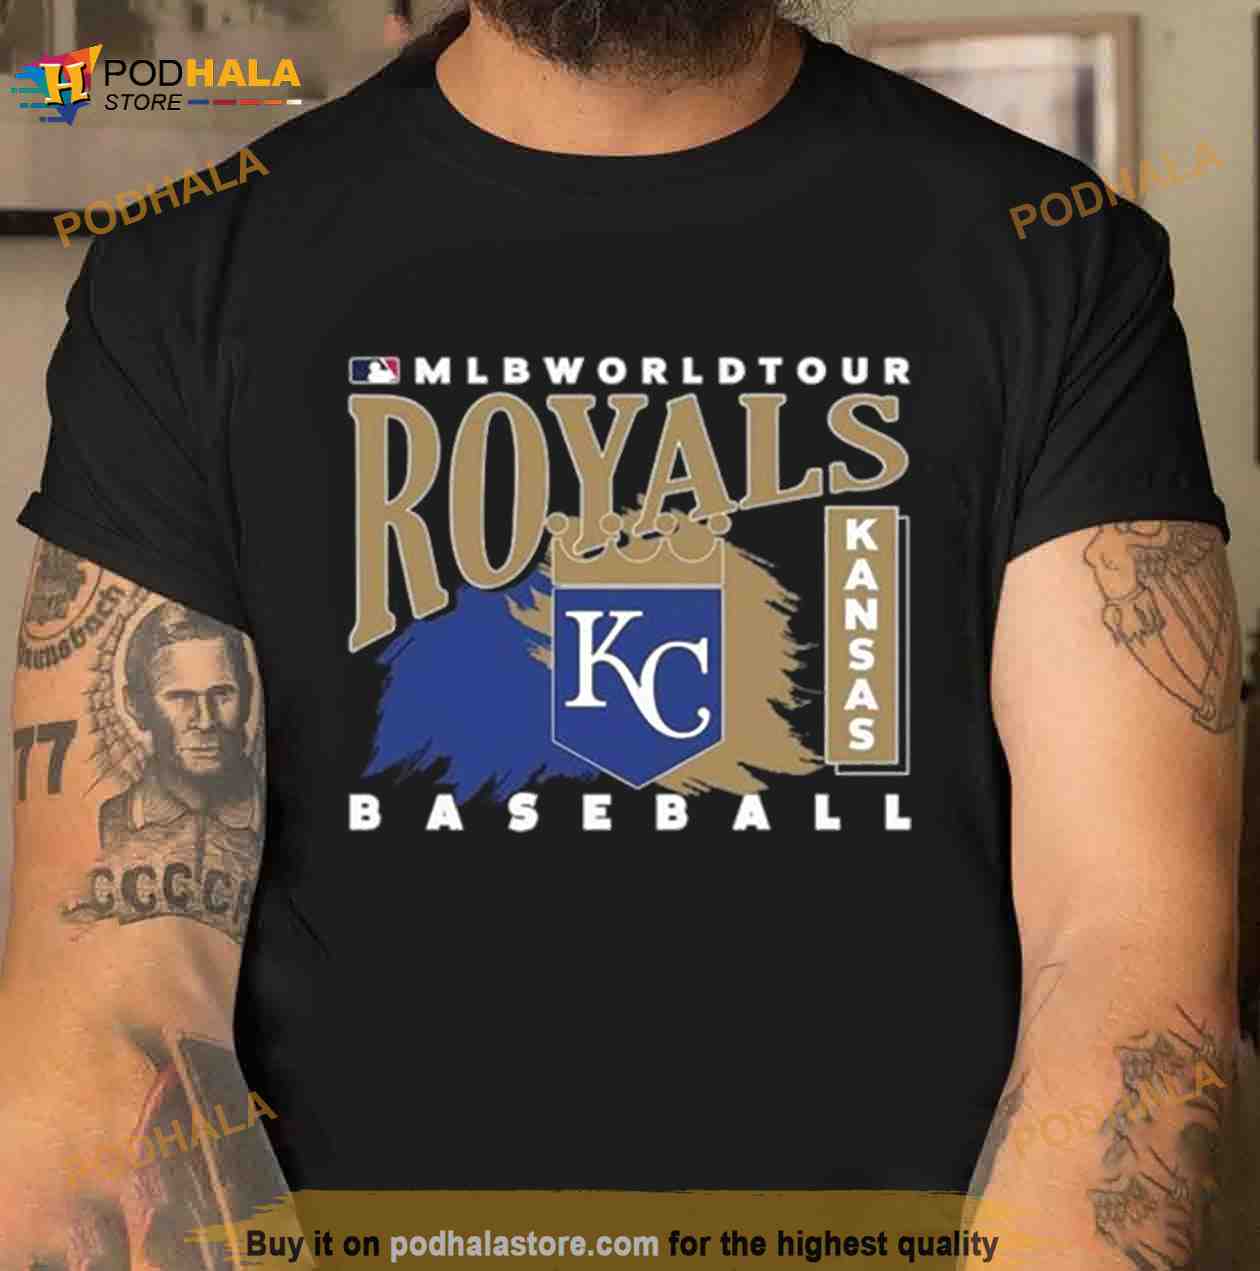 royals tee shirt